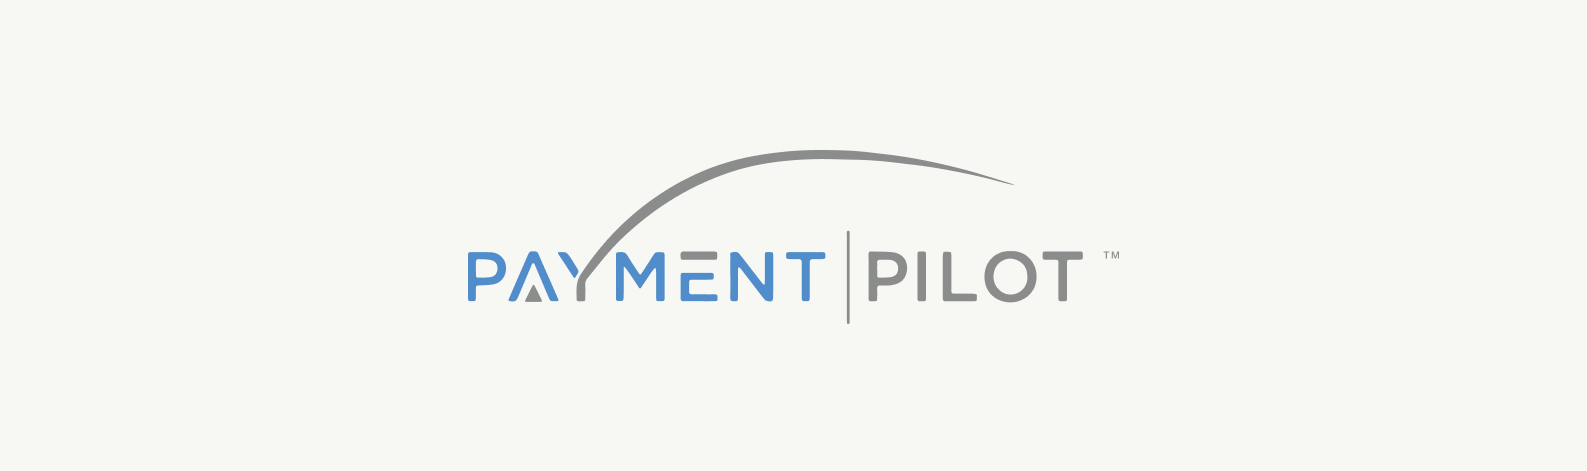 Payment Pilot